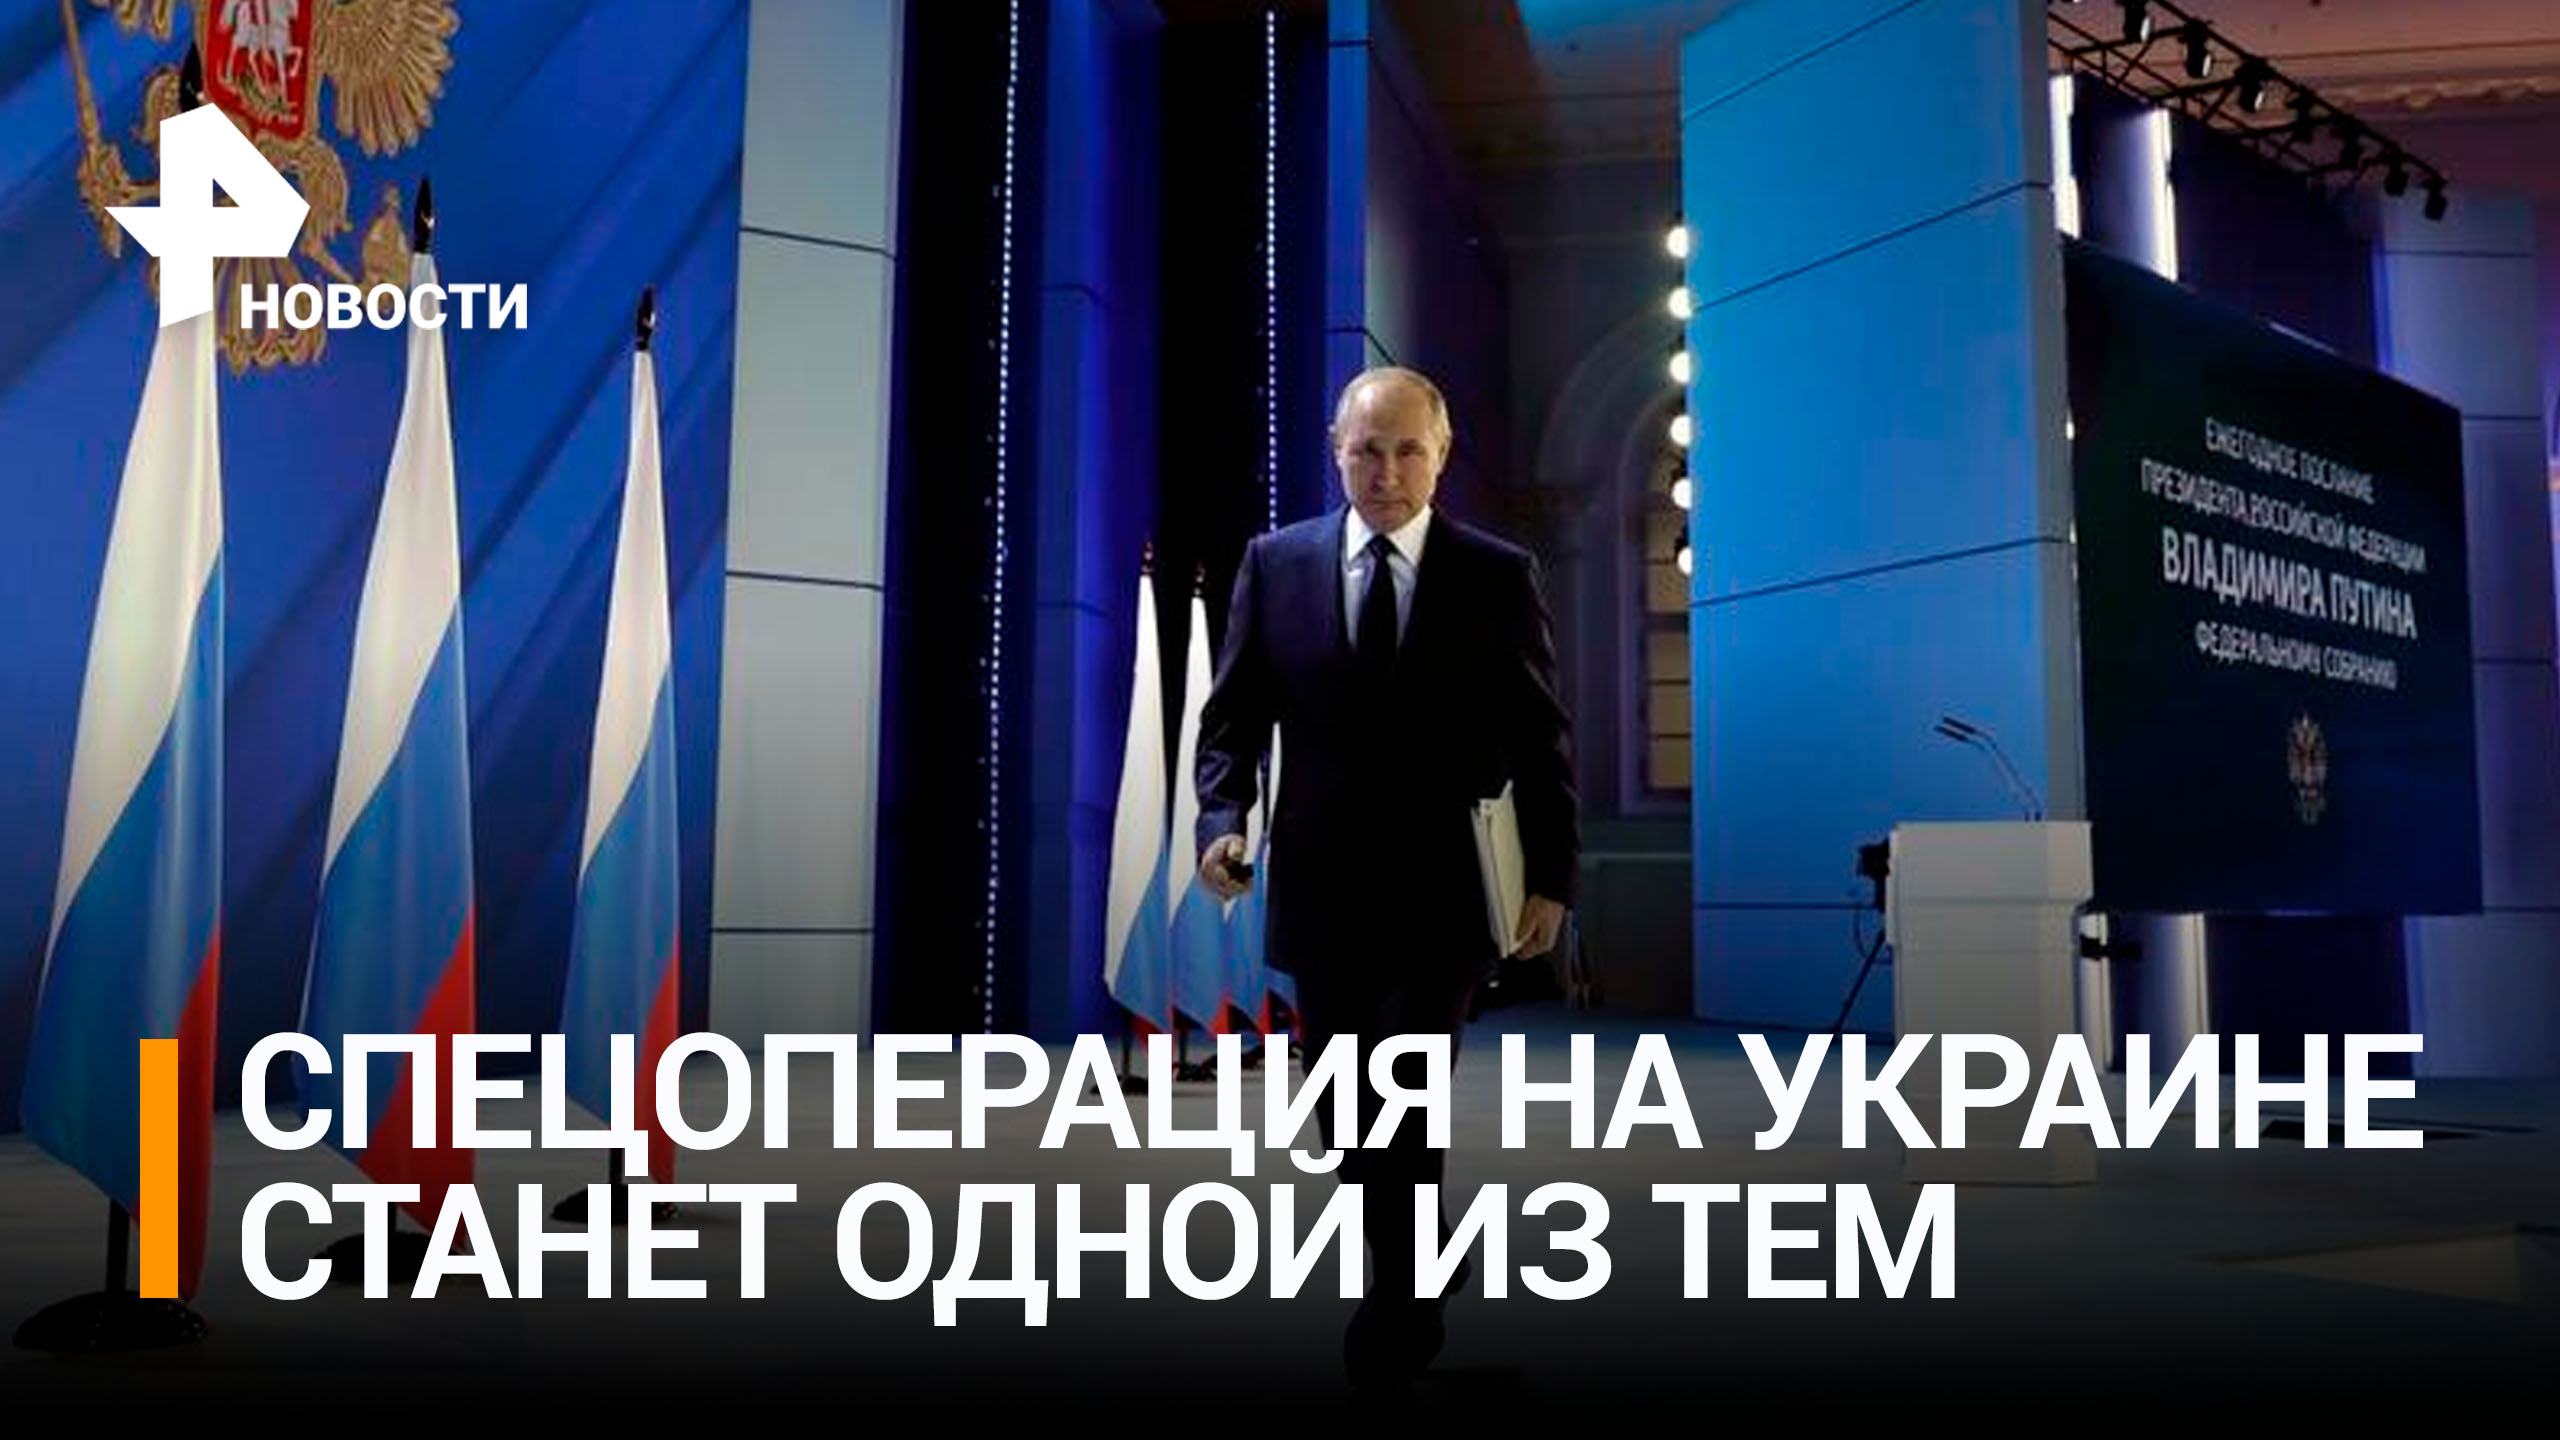 Как в Москве готовятся к оглашению послания Путина парламенту / РЕН Новости